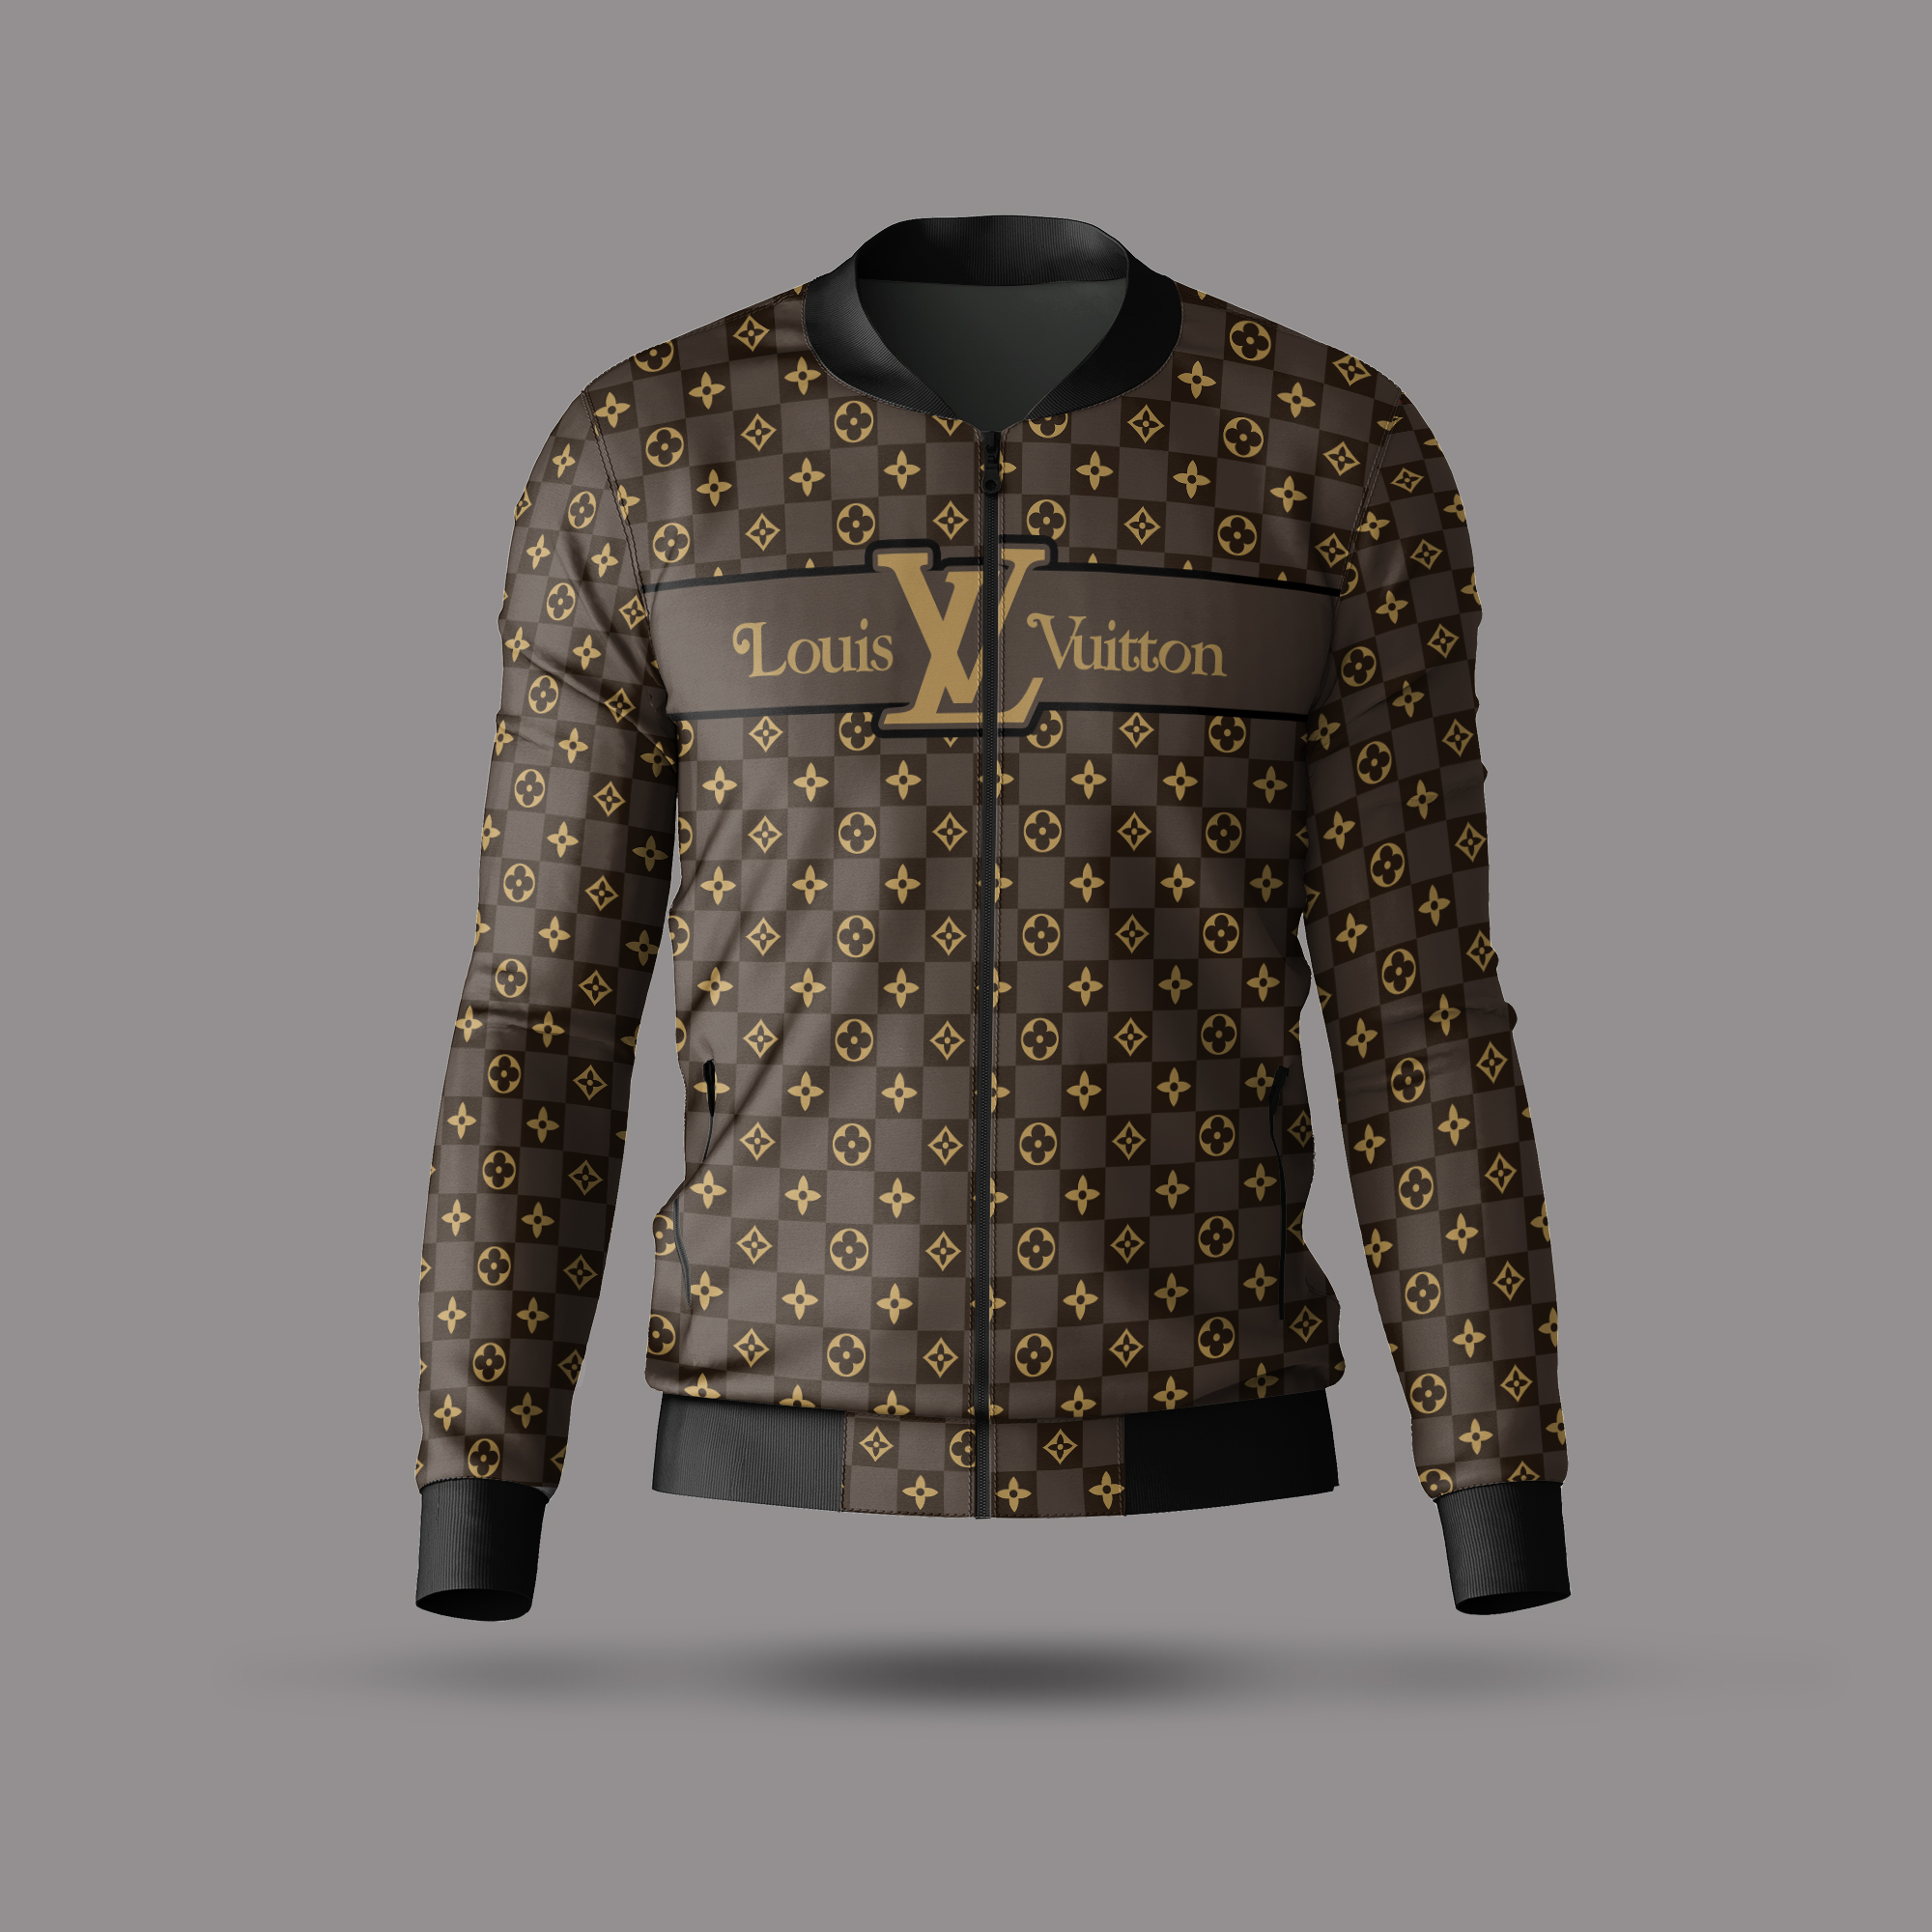 Louis Vuitton Jackets For Men – DN9040334 – ABLPRINT